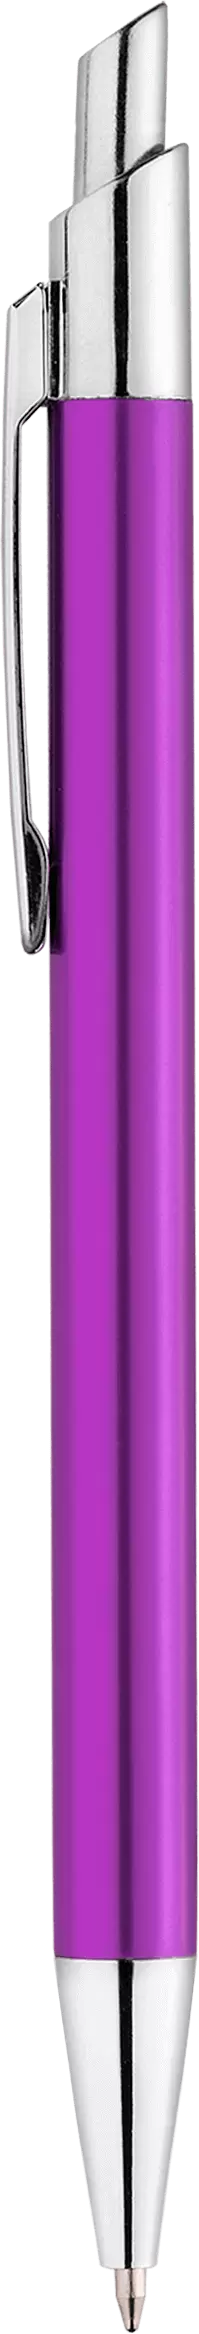 Ручка TIKKO NEW Фиолетовая 2105-11